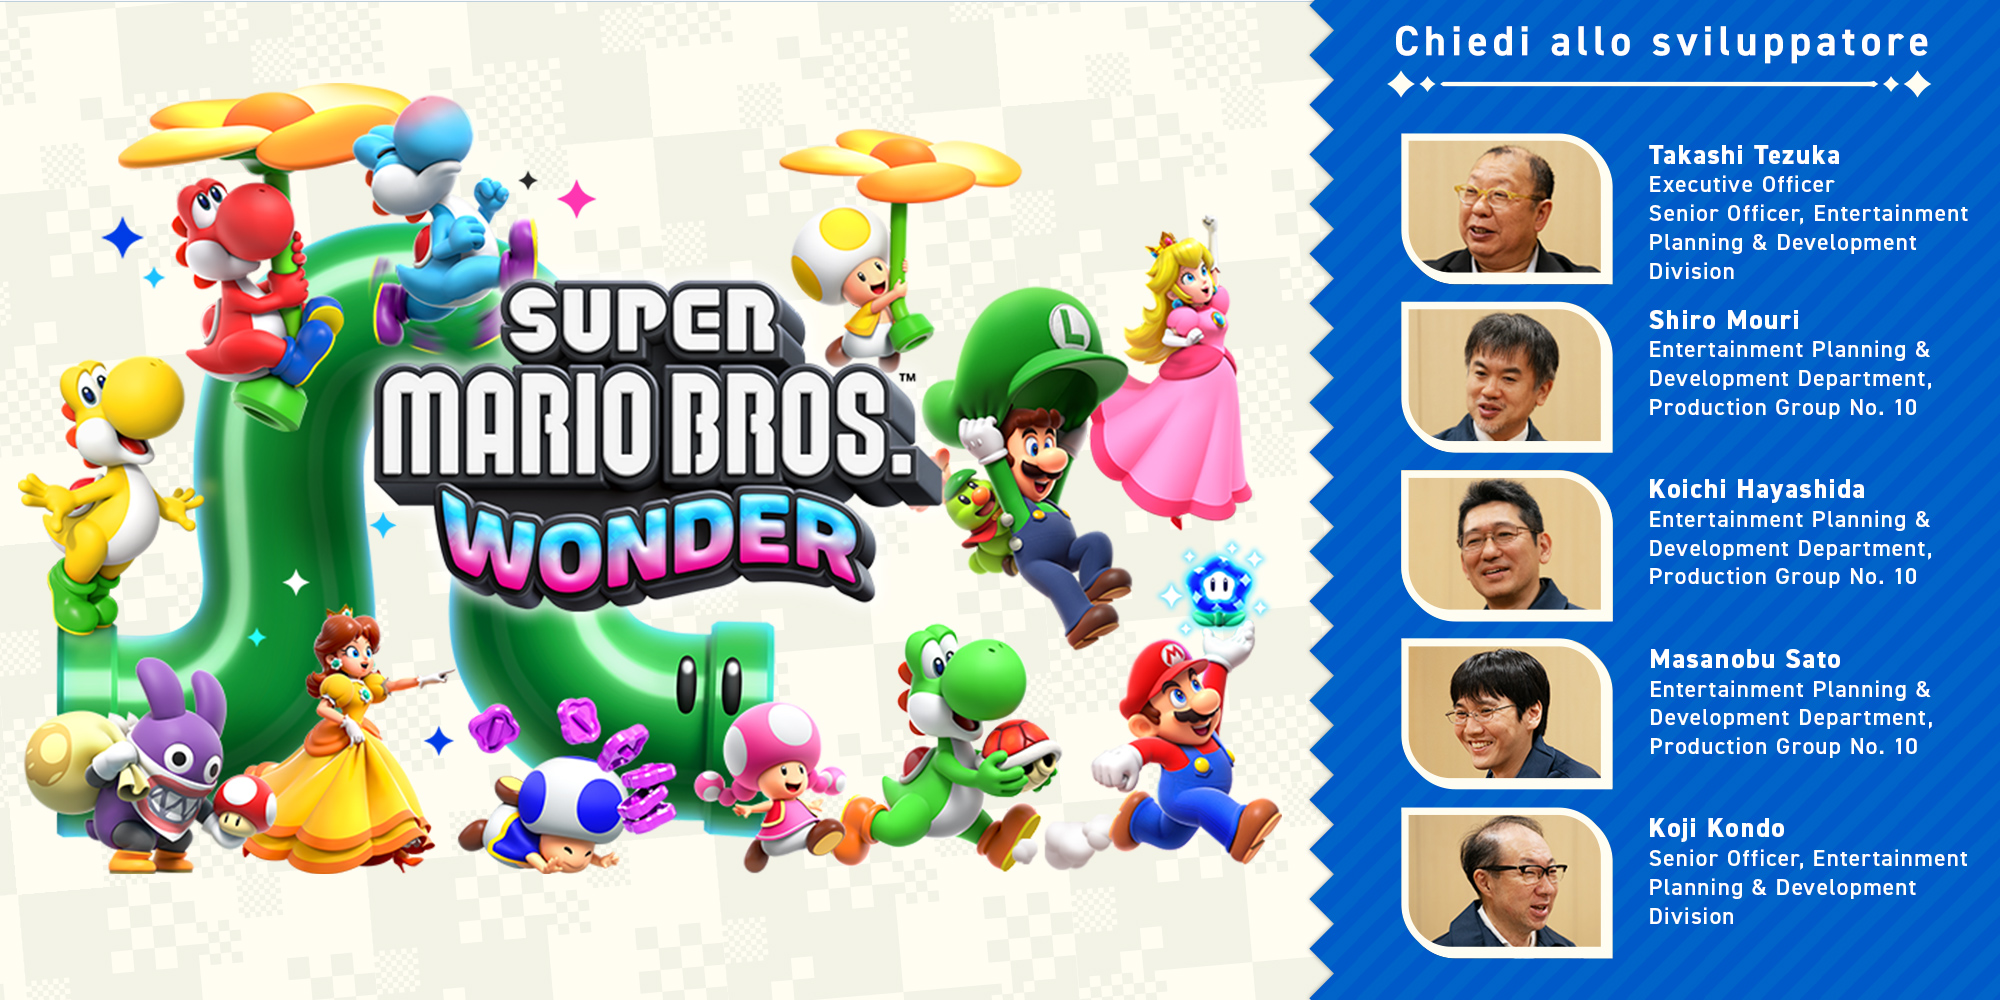 Chiedi allo sviluppatore, parte 11: Super Mario Bros. Wonder – Capitolo 1